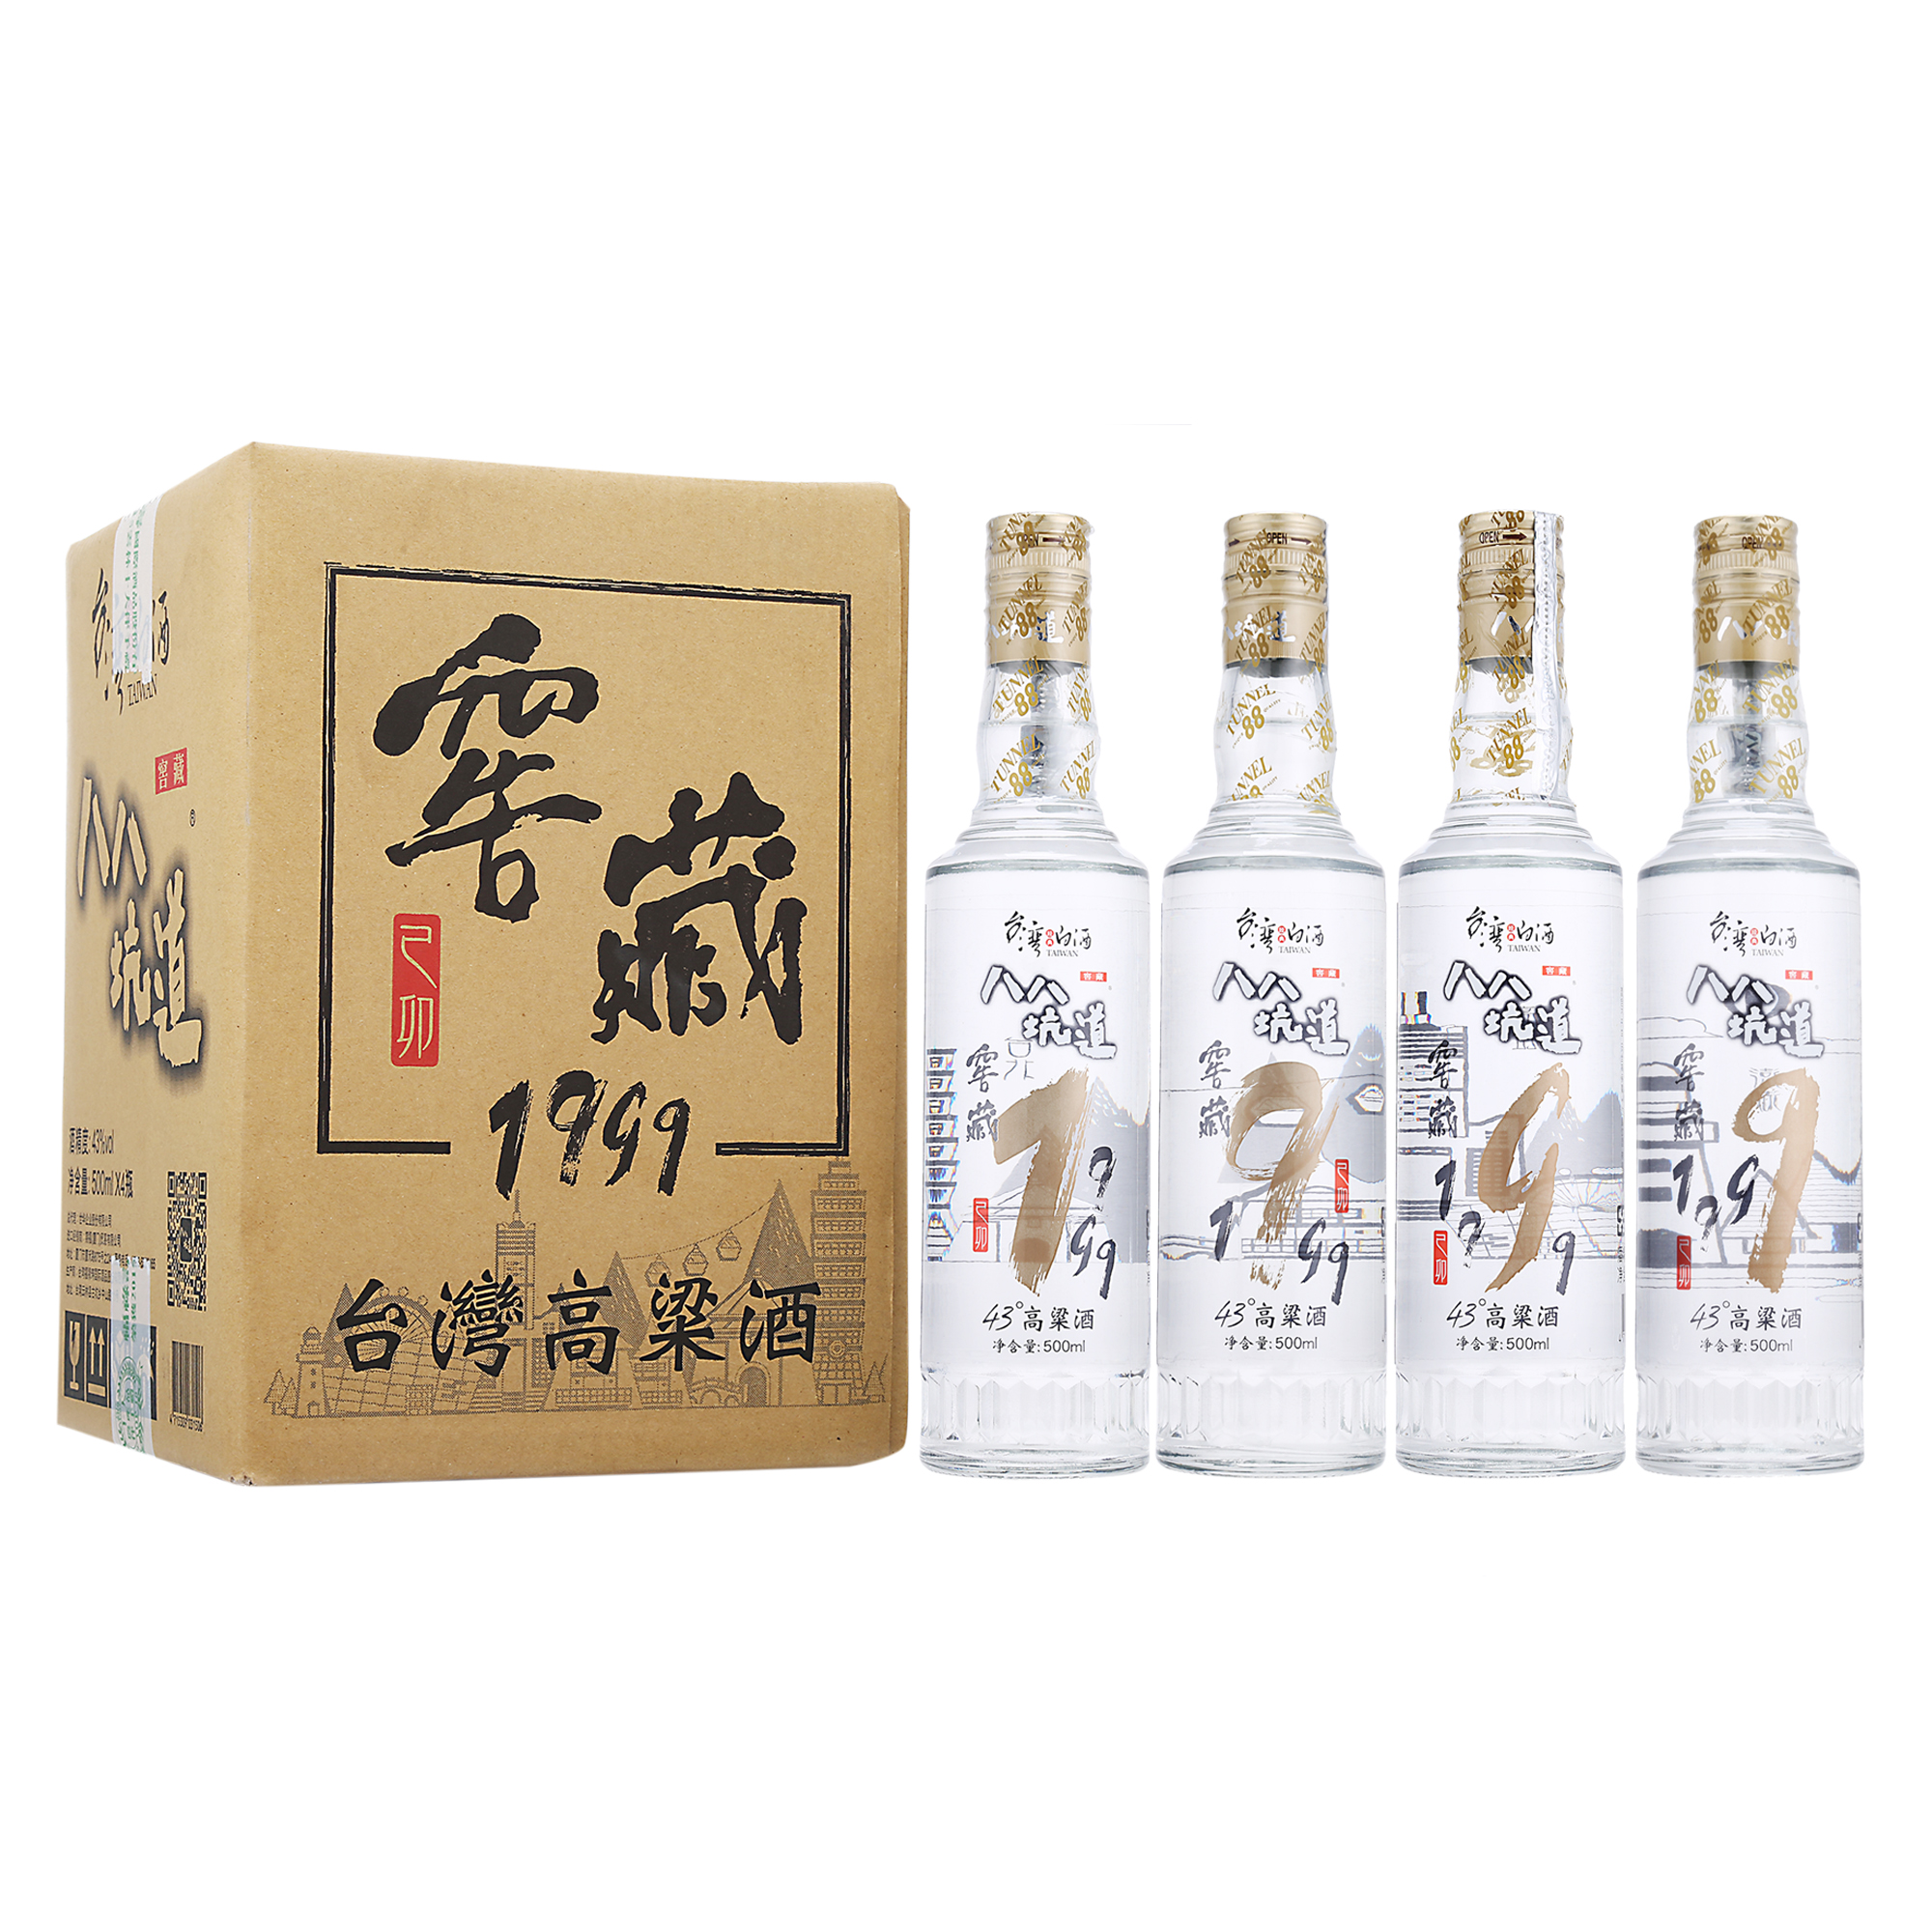 中国台湾高粱酒 八八坑道 43度清香型白酒 窖藏1999 500ml*4瓶 整箱装